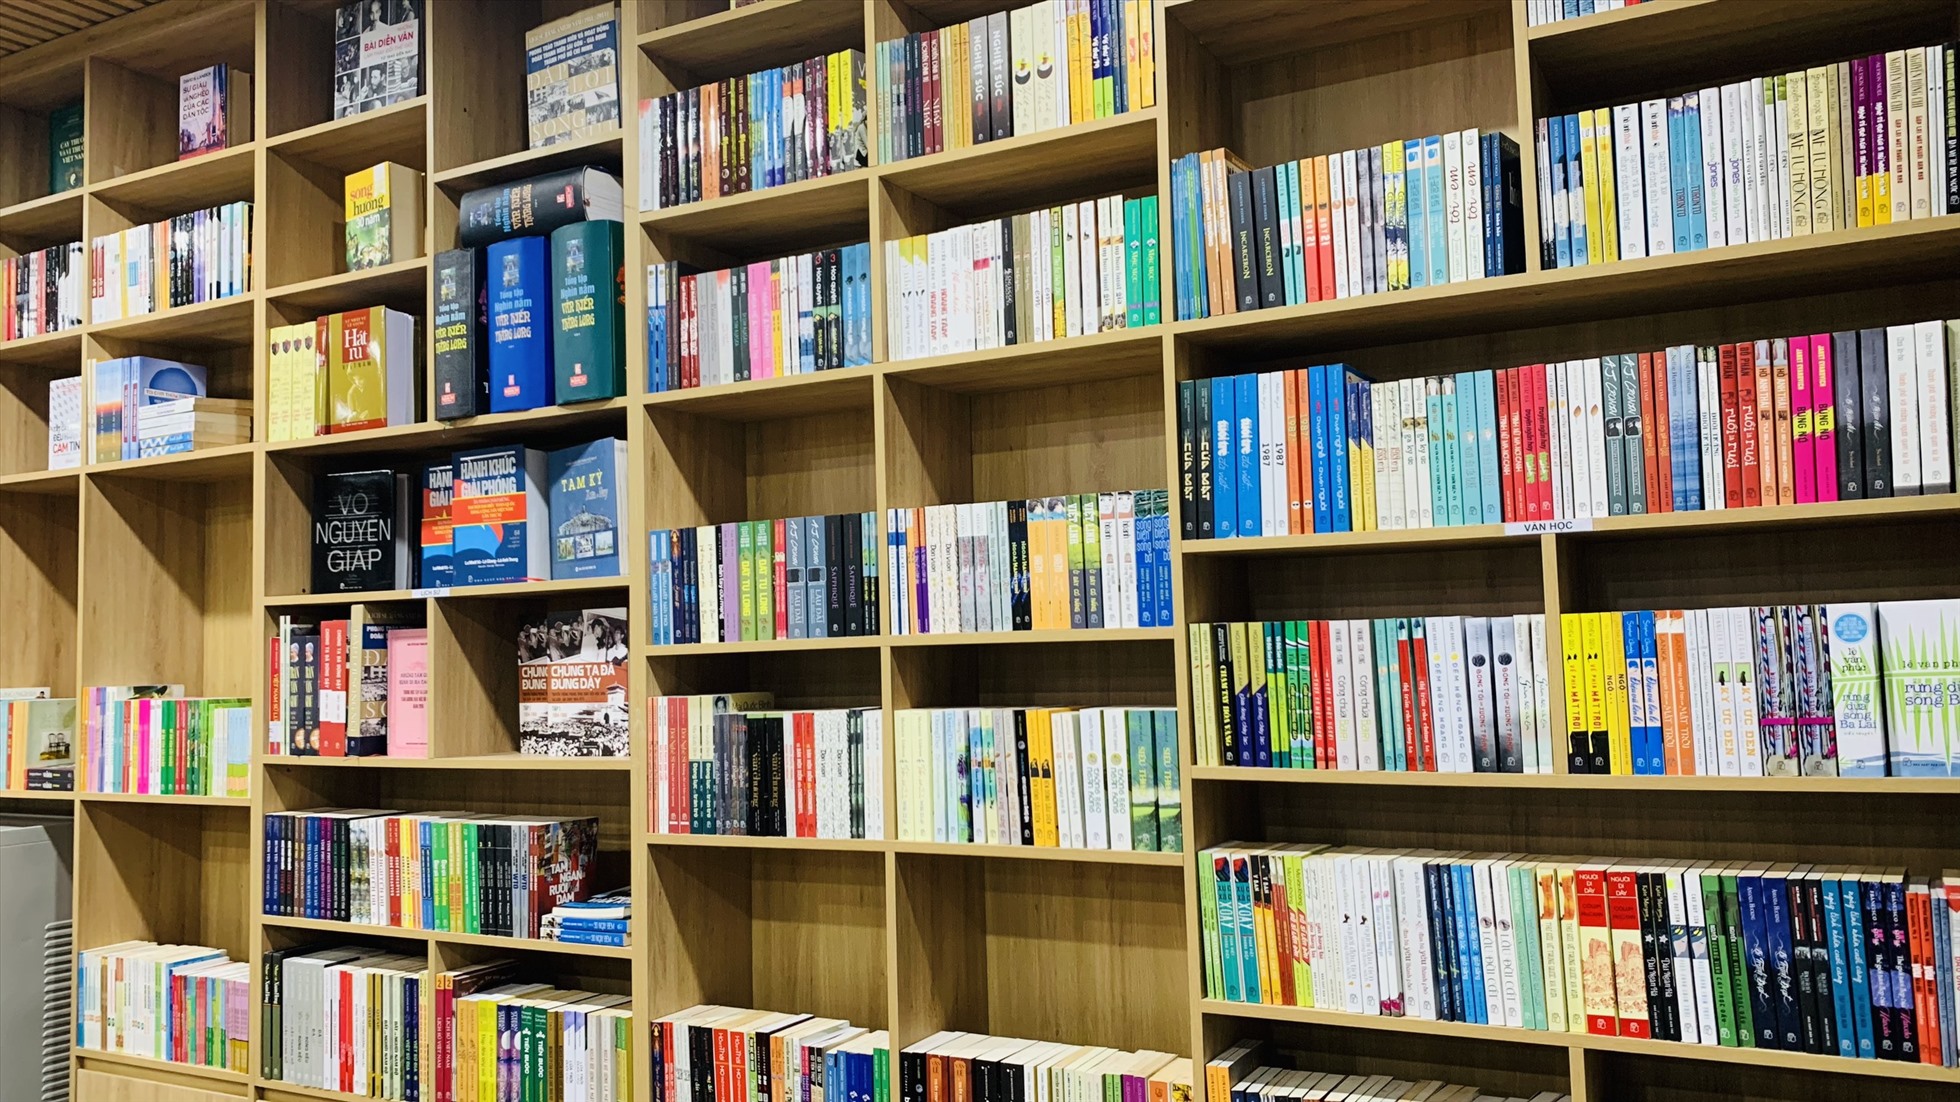 Cùng với khánh thành thư viện số, Tam Kỳ cũng ra mắt Quỹ sách cộng đồng thành phố với gần 3.600 cuốn sách và 5 máy tính, tổng giá trị hơn 700 triệu đồng từ cộng đồng đóng góp. Ảnh Hoàng Bin